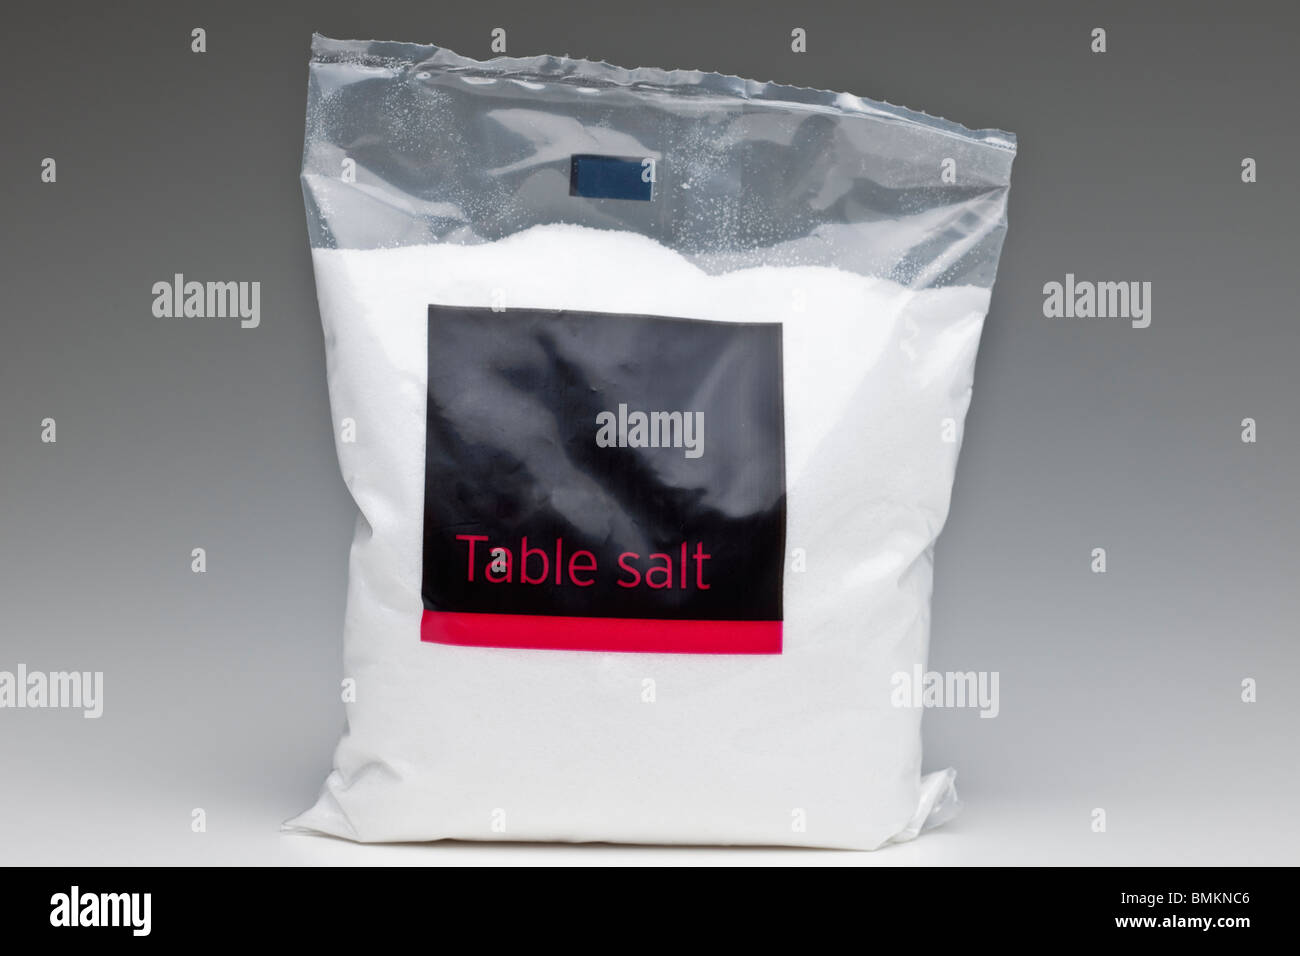 Polythene bag of Table salt Stock Photo